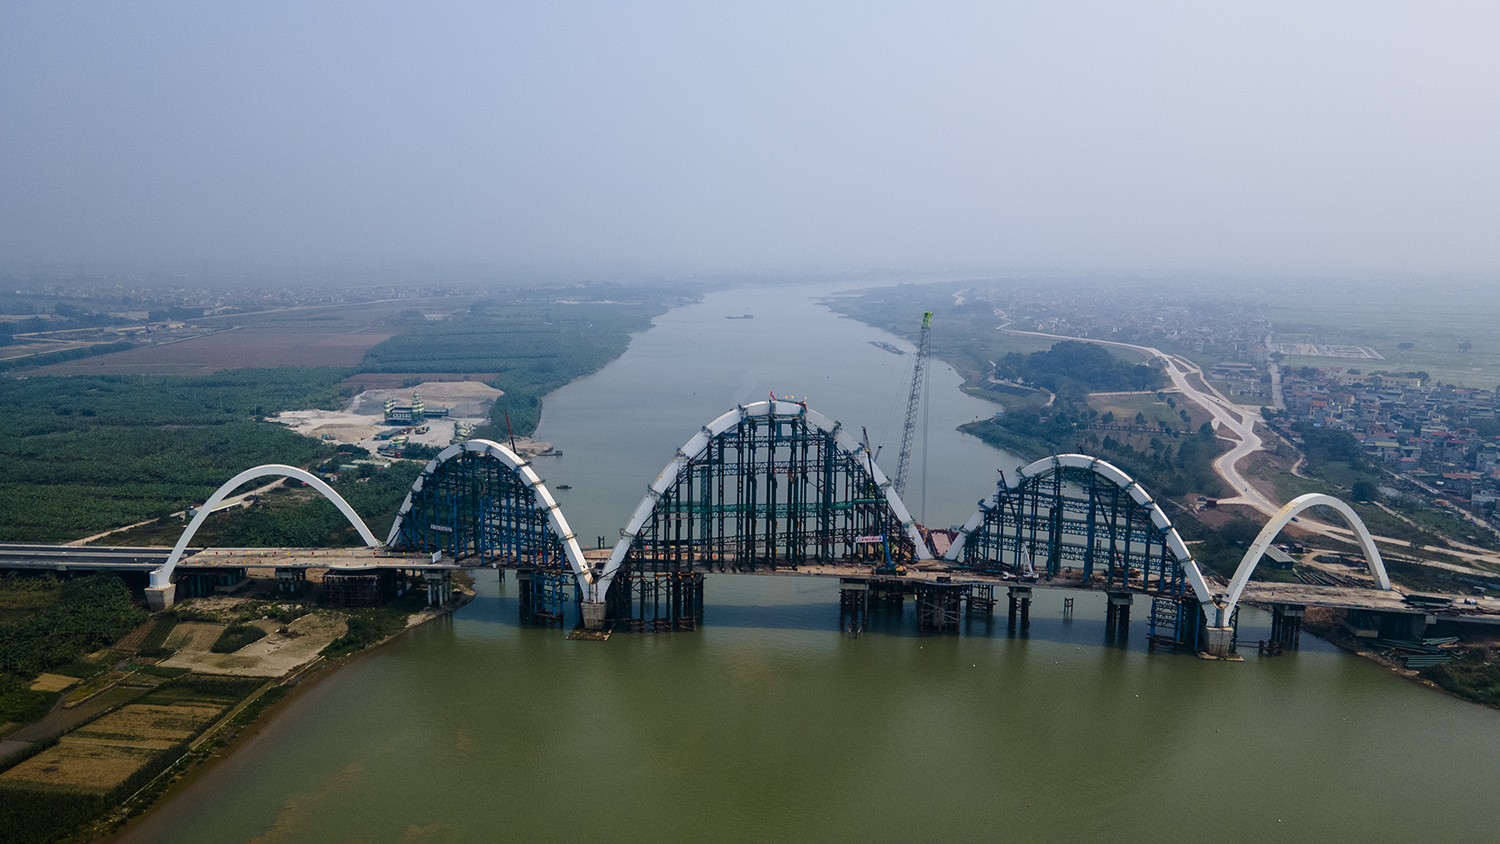 Cầu vòm thép cao nhất Việt Nam hình 2 con rồng uốn lượn đã thành hình - 4